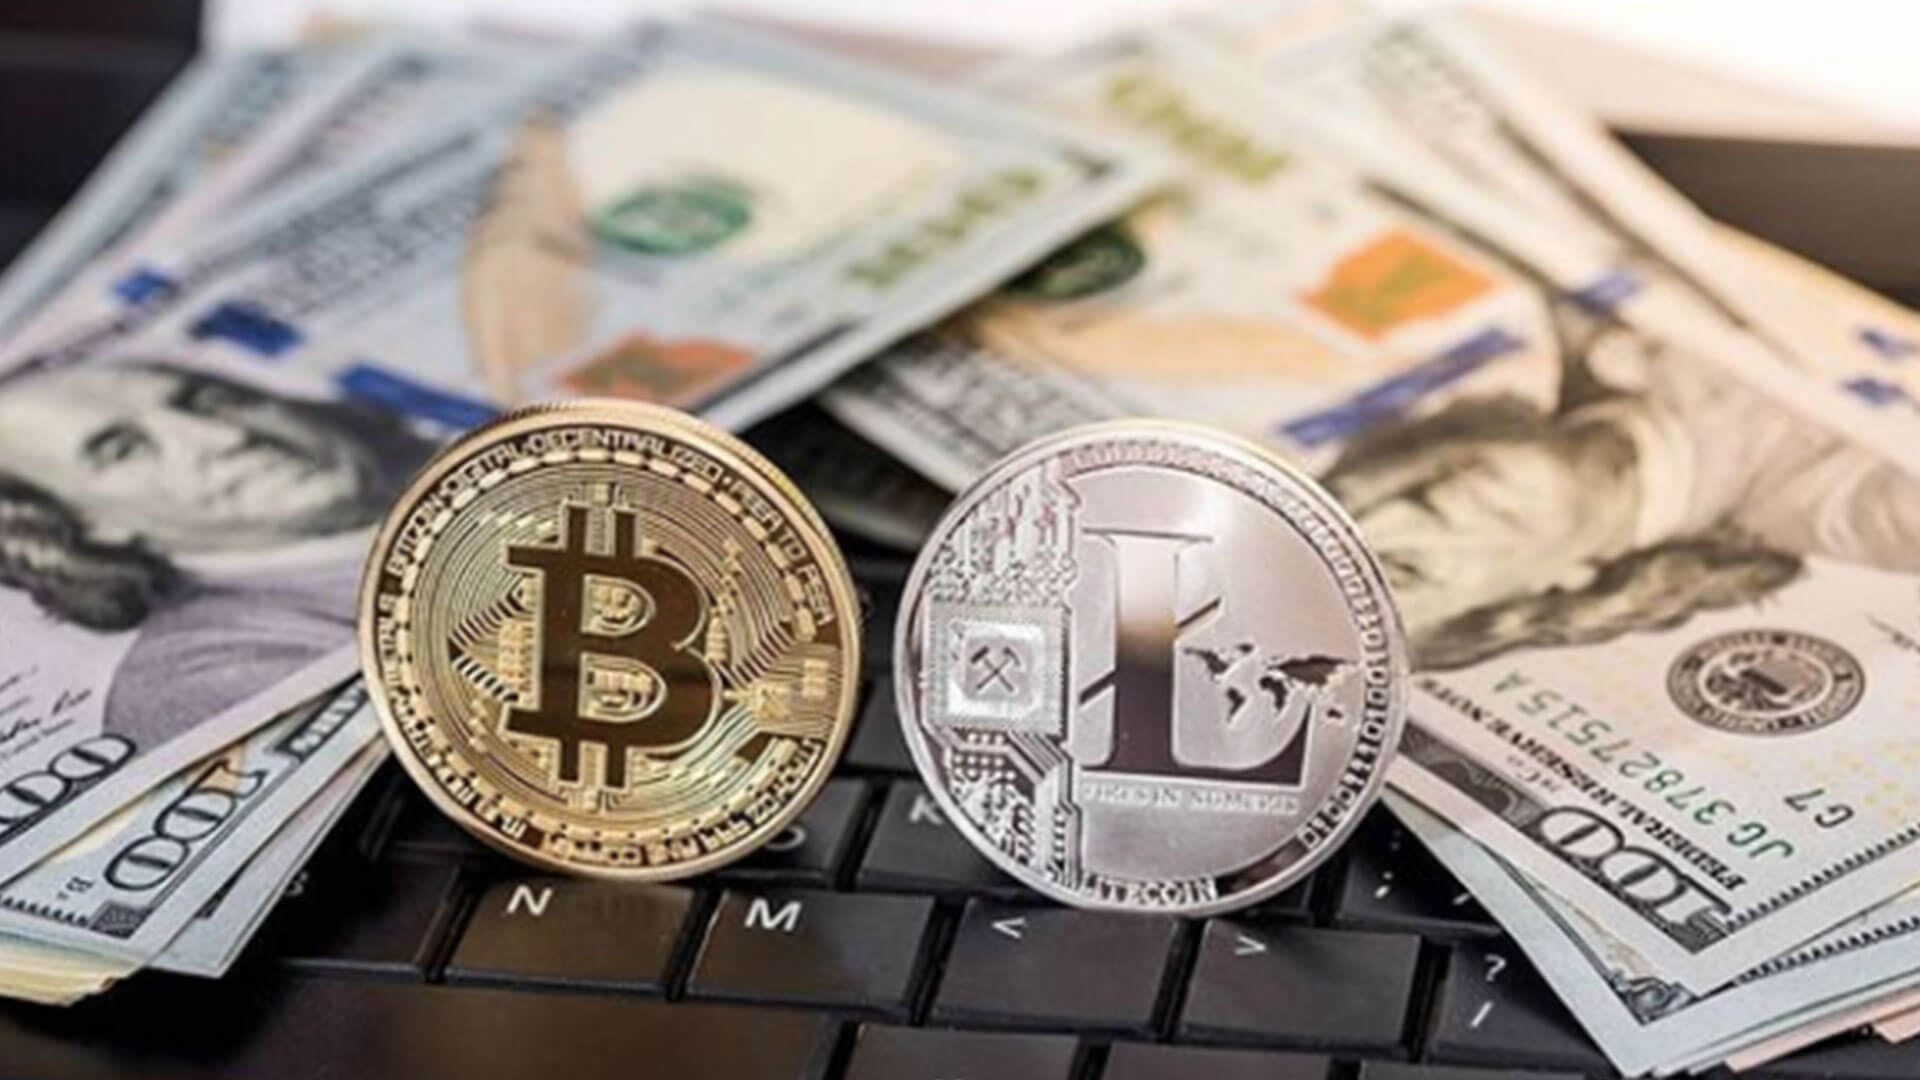 will litecoin be better than bitcoin